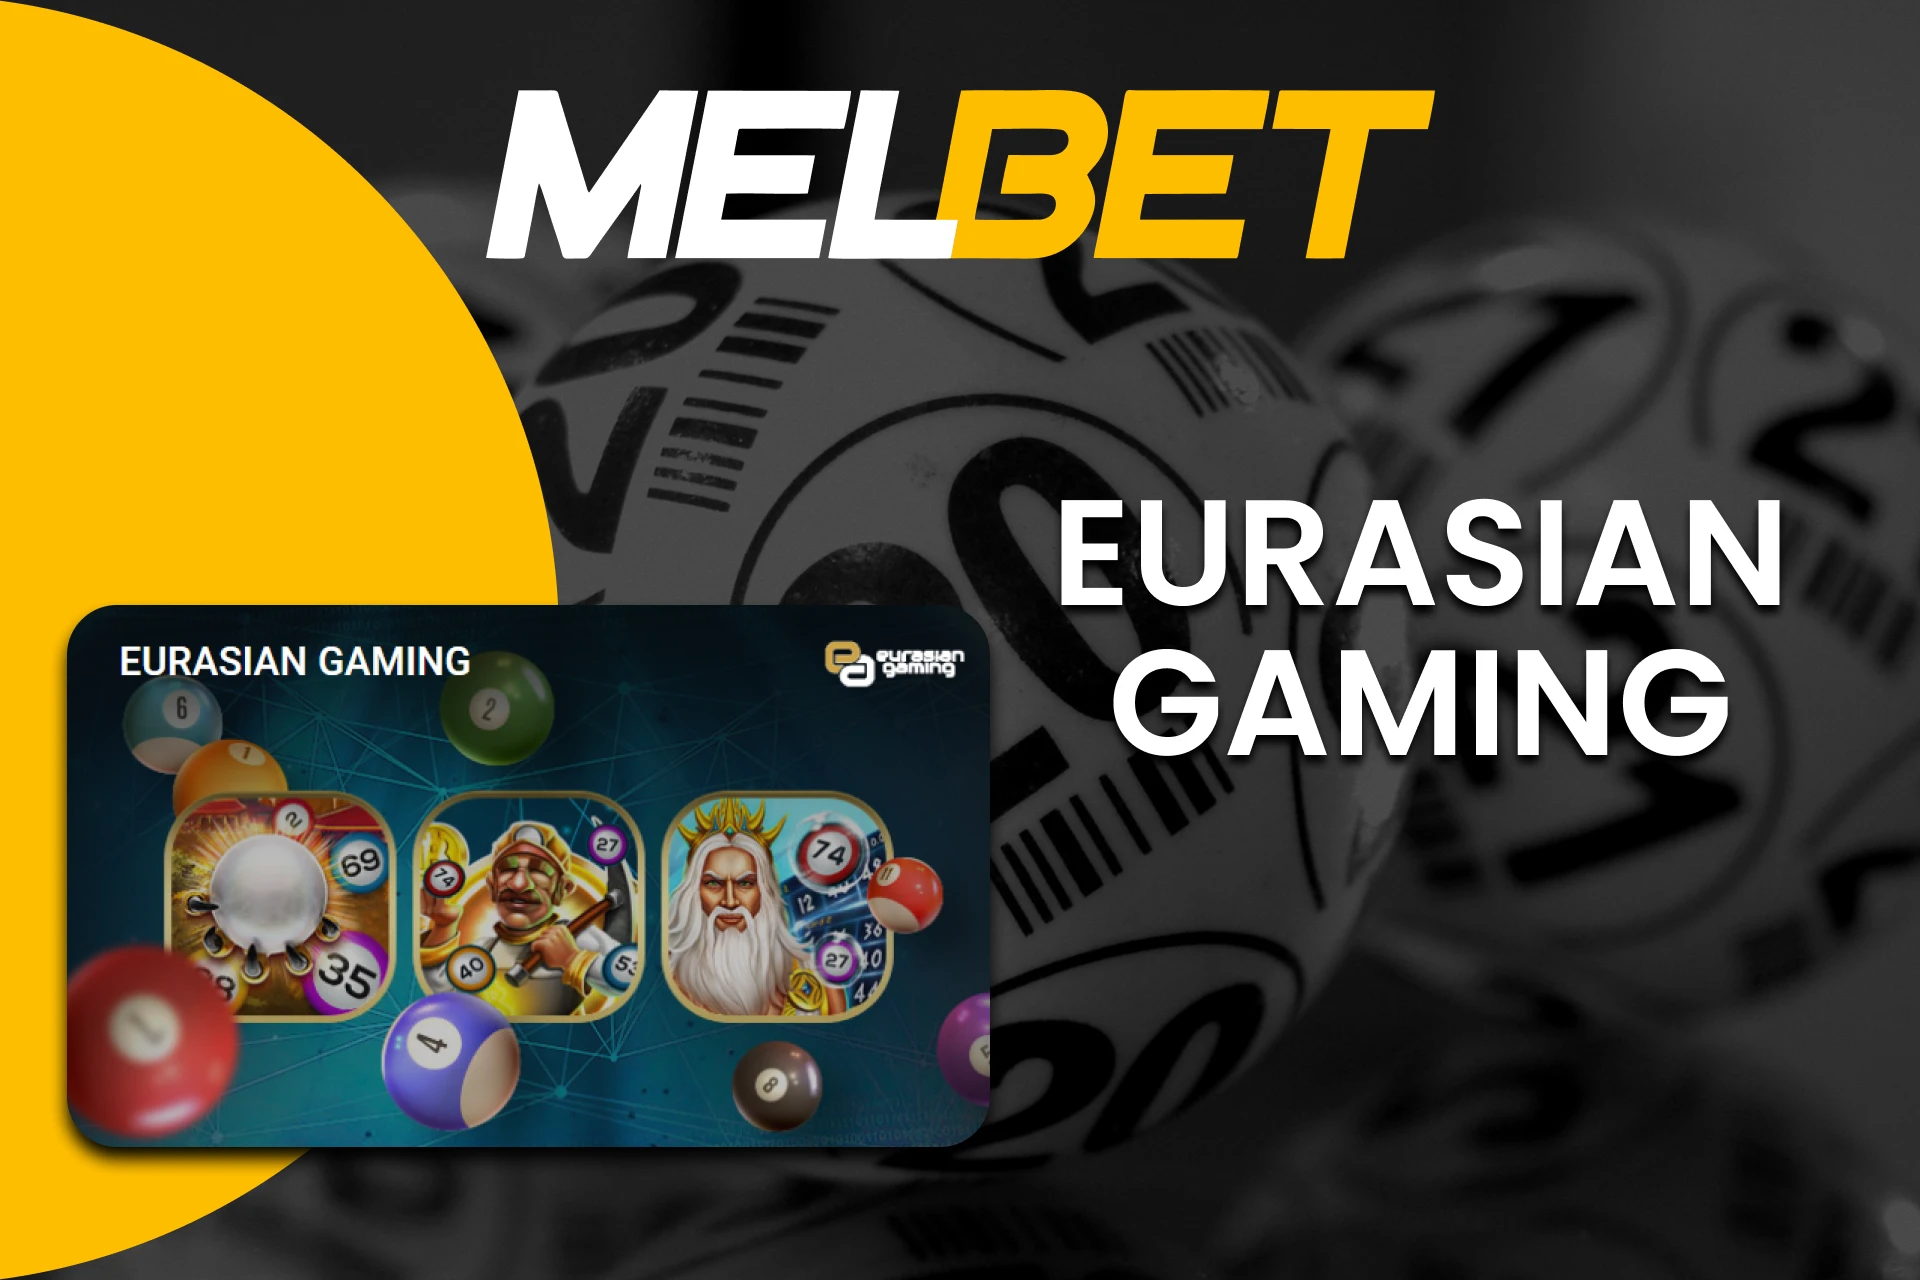 Choose Eurasian Gaming to play Bingo at Melbet.